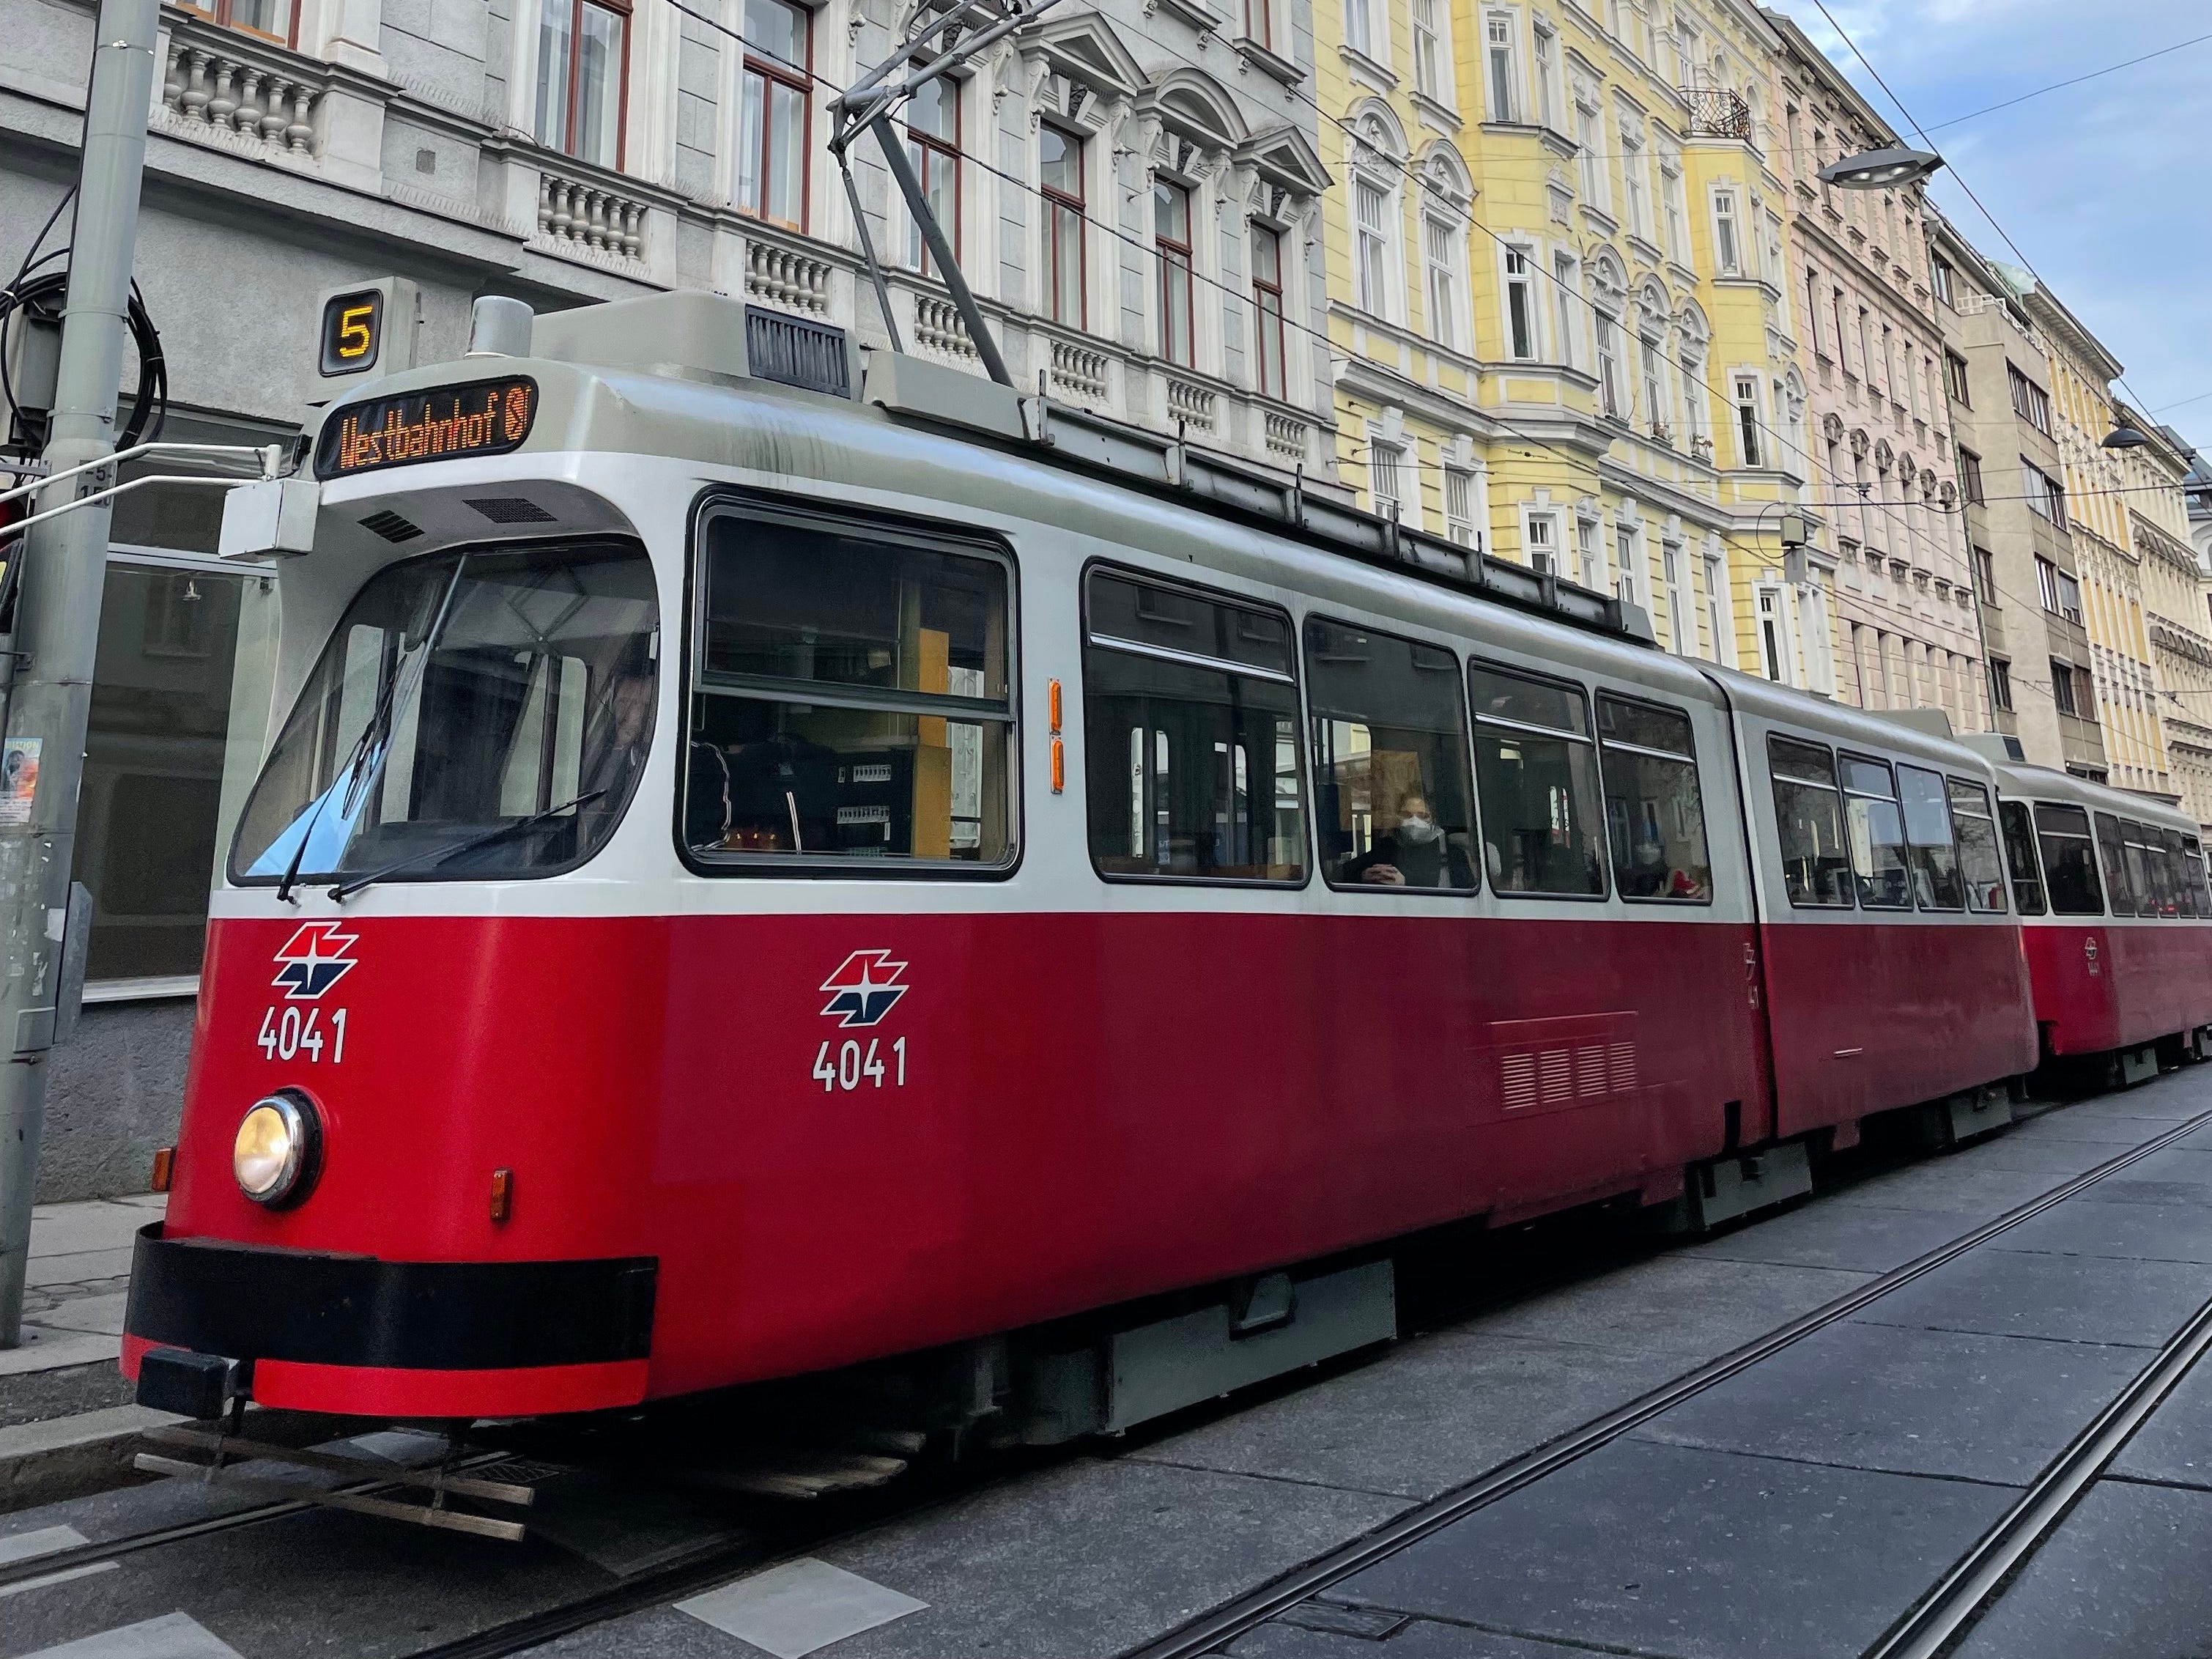 Außenaufnahme einer Straßenbahn in Wien